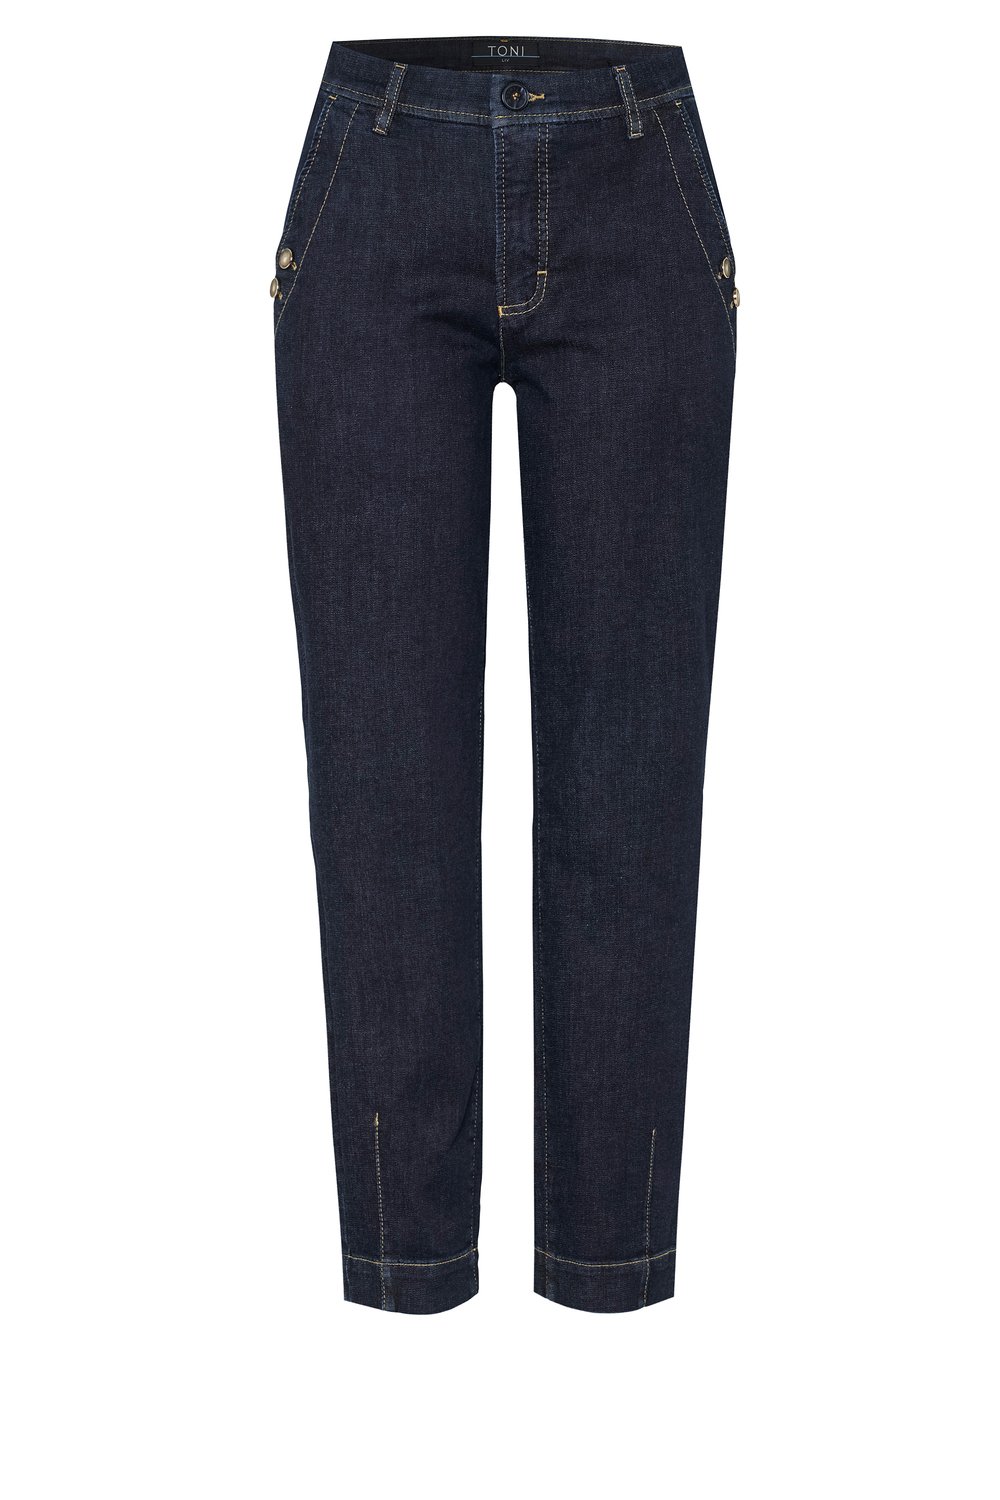 Damen-Jeans "Liv Carrot Ankle" mit Zierknöpfen aus Super Soft Denim